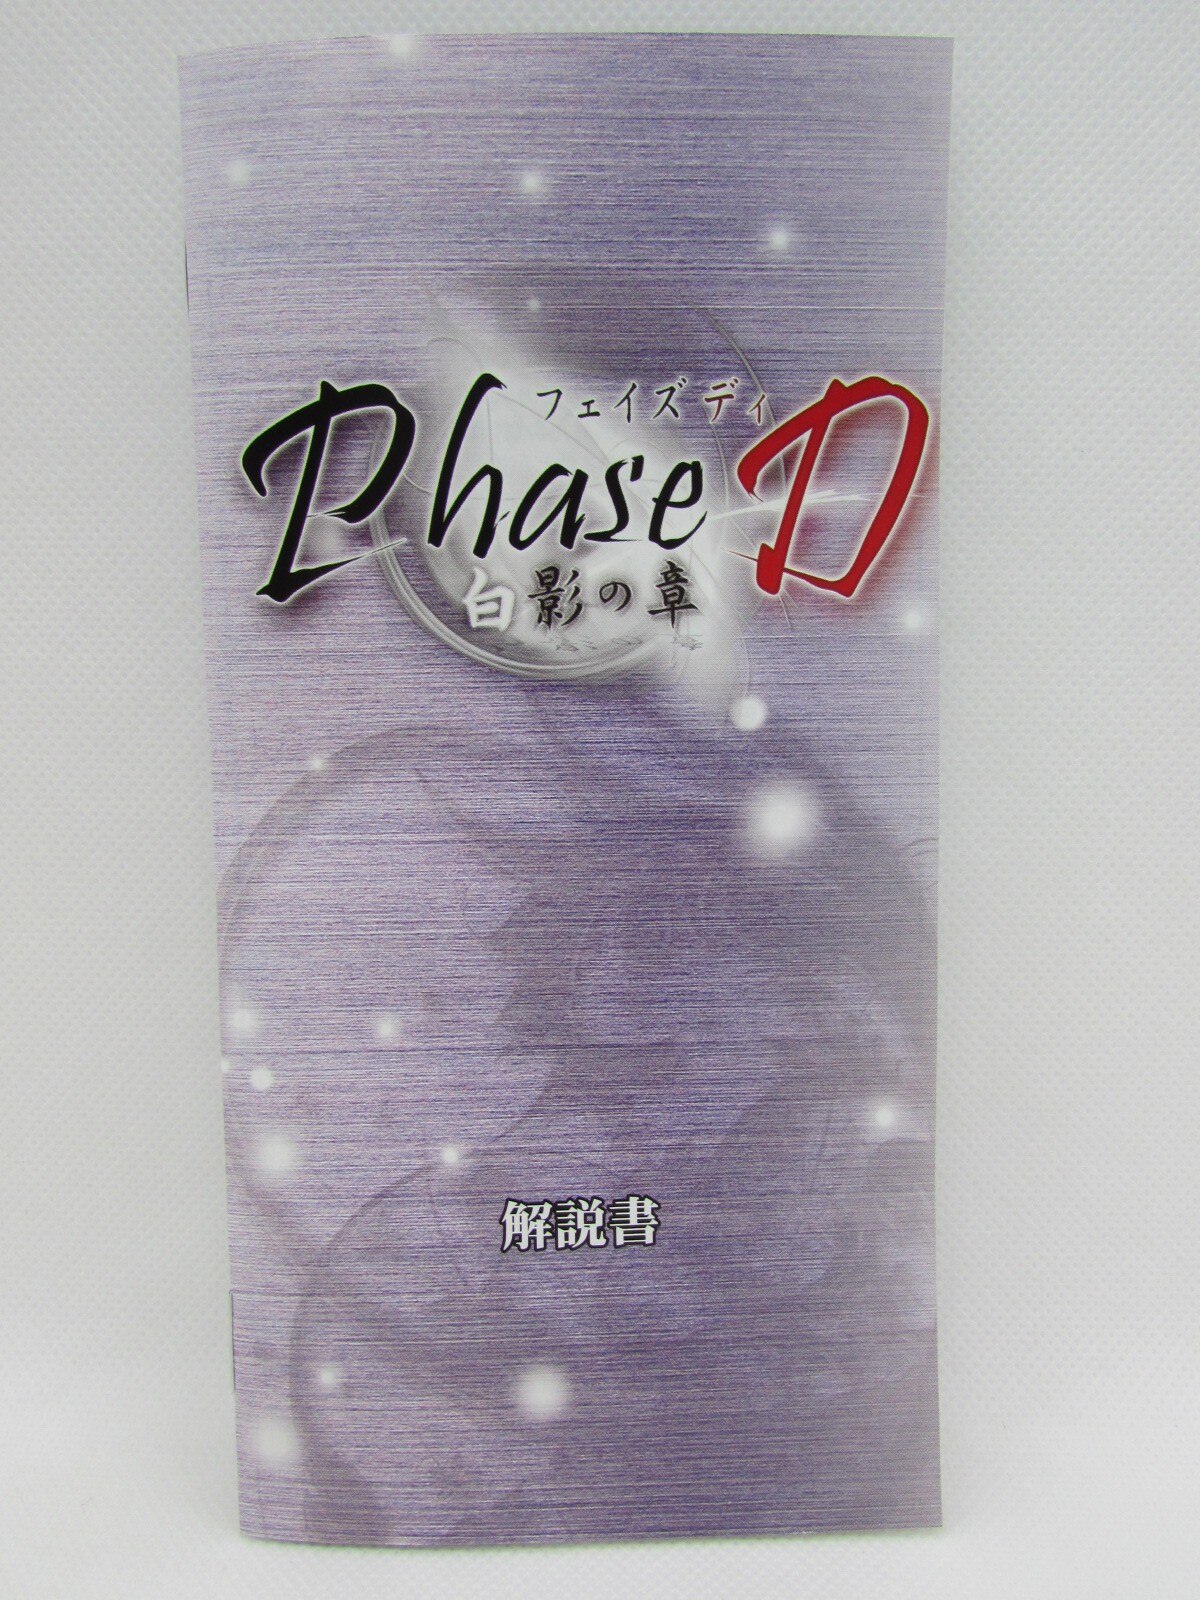 Phase D 白影の章 (通常版) - PSP - ソフト